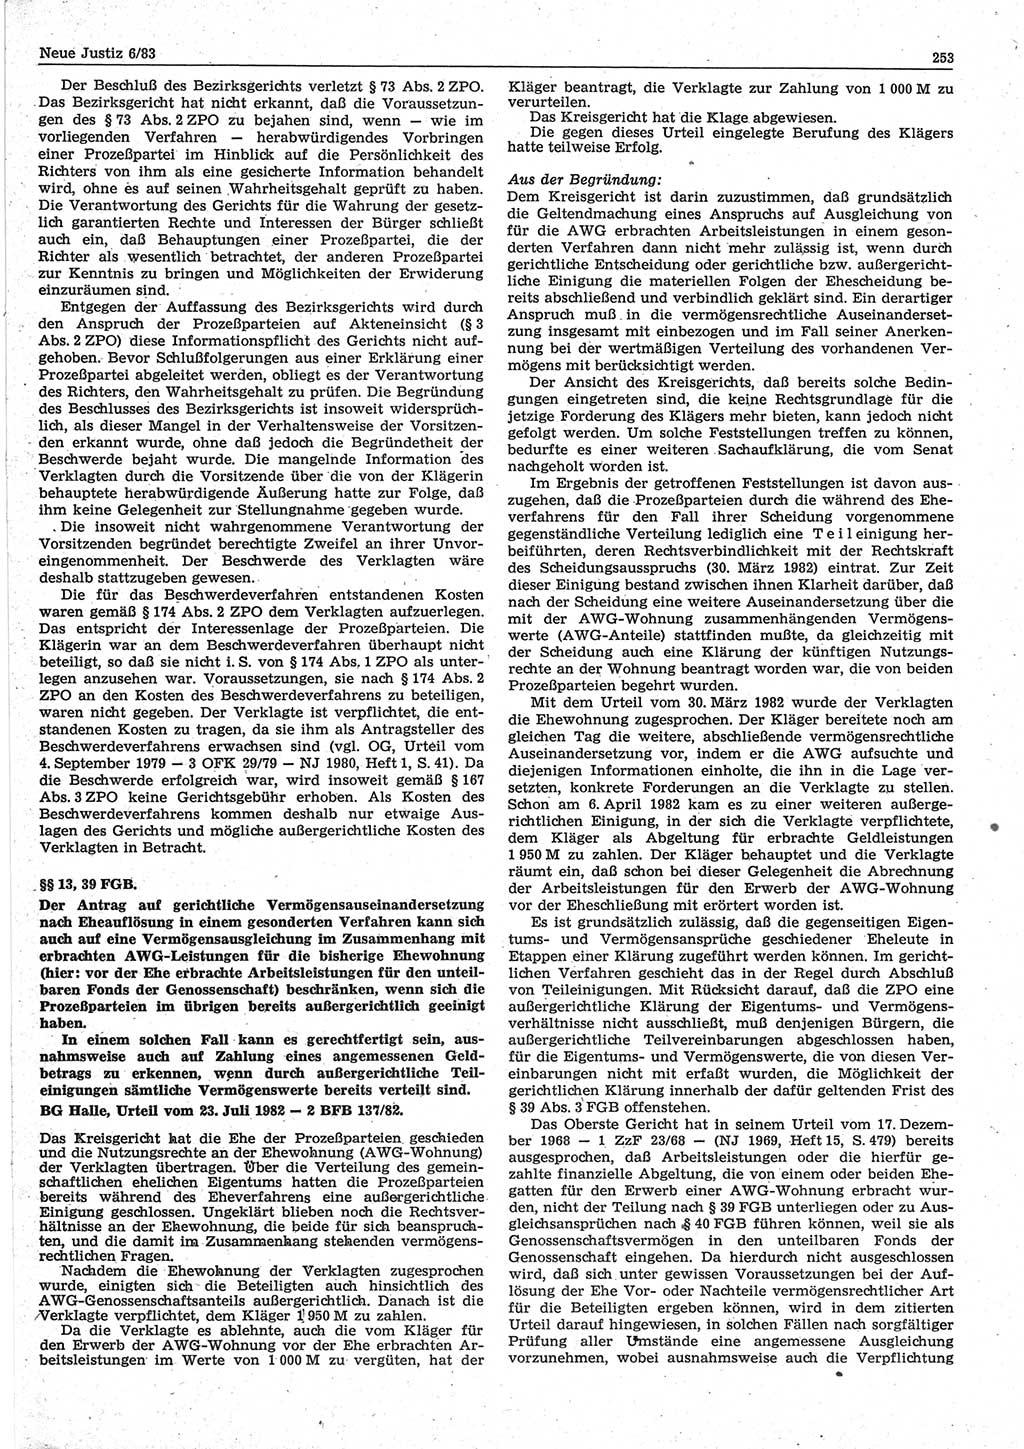 Neue Justiz (NJ), Zeitschrift für sozialistisches Recht und Gesetzlichkeit [Deutsche Demokratische Republik (DDR)], 37. Jahrgang 1983, Seite 253 (NJ DDR 1983, S. 253)